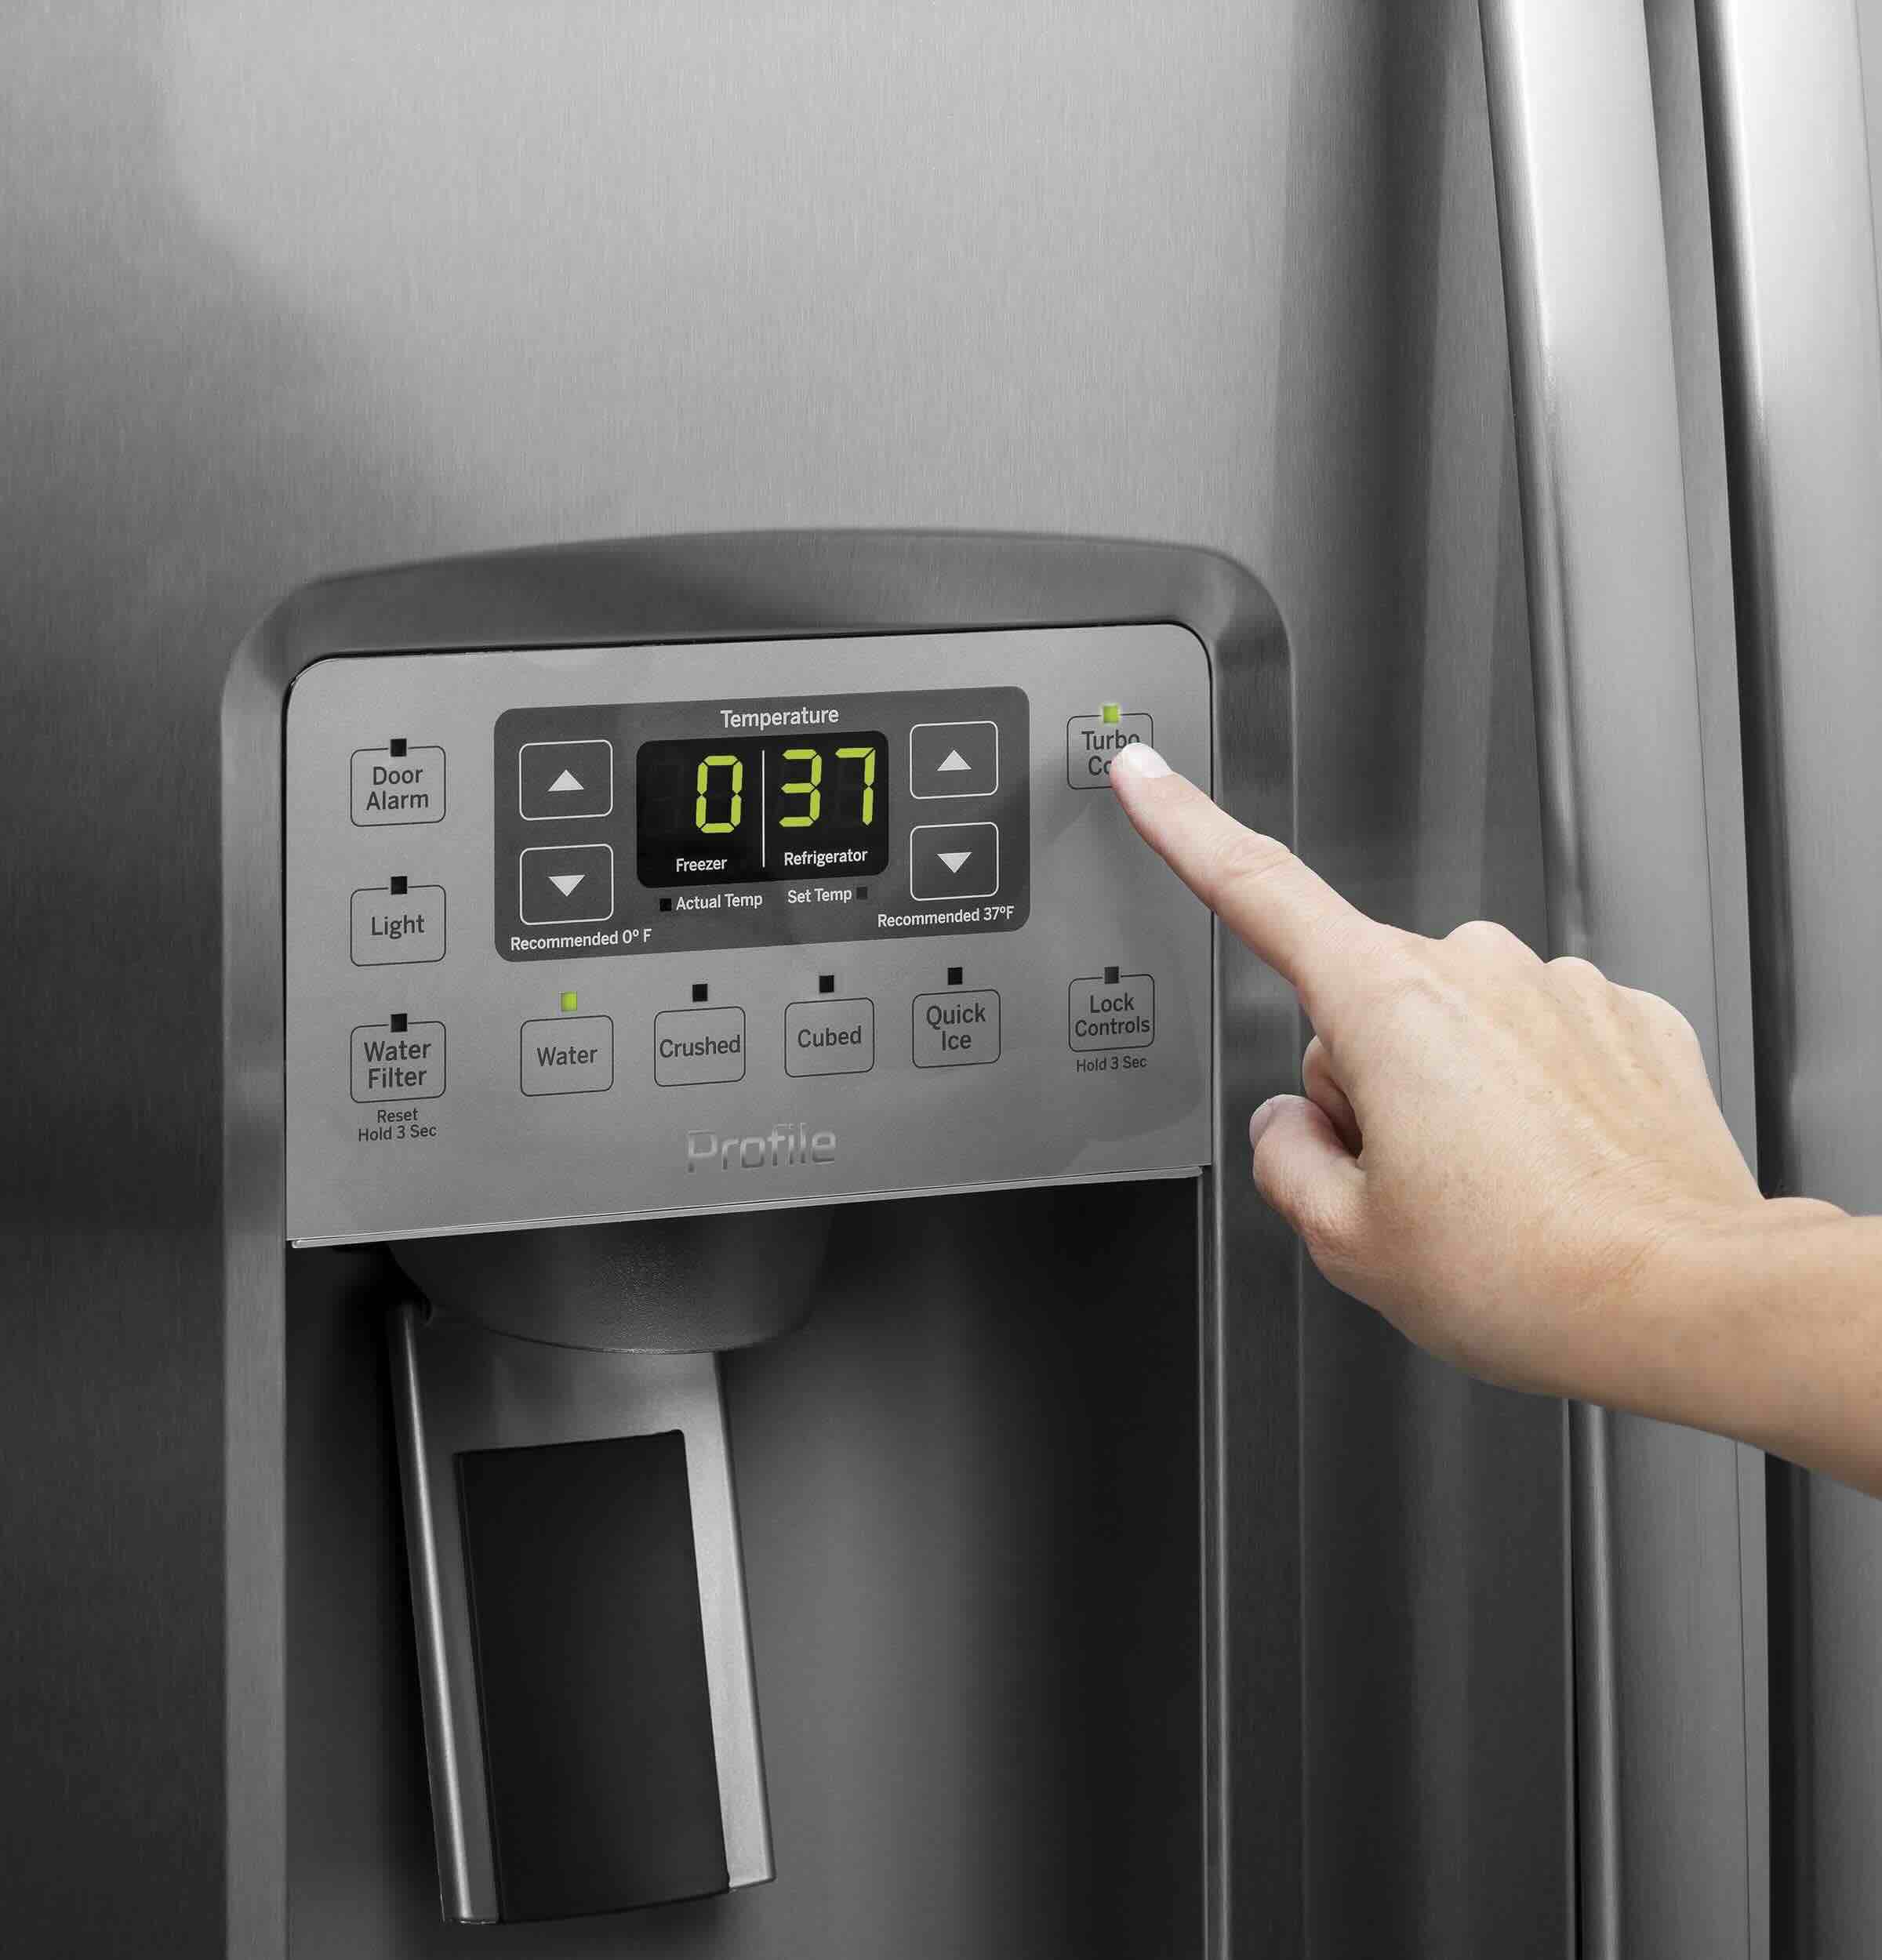 How To Fix The Error Code FZ Err For GE Refrigerator & Freezer